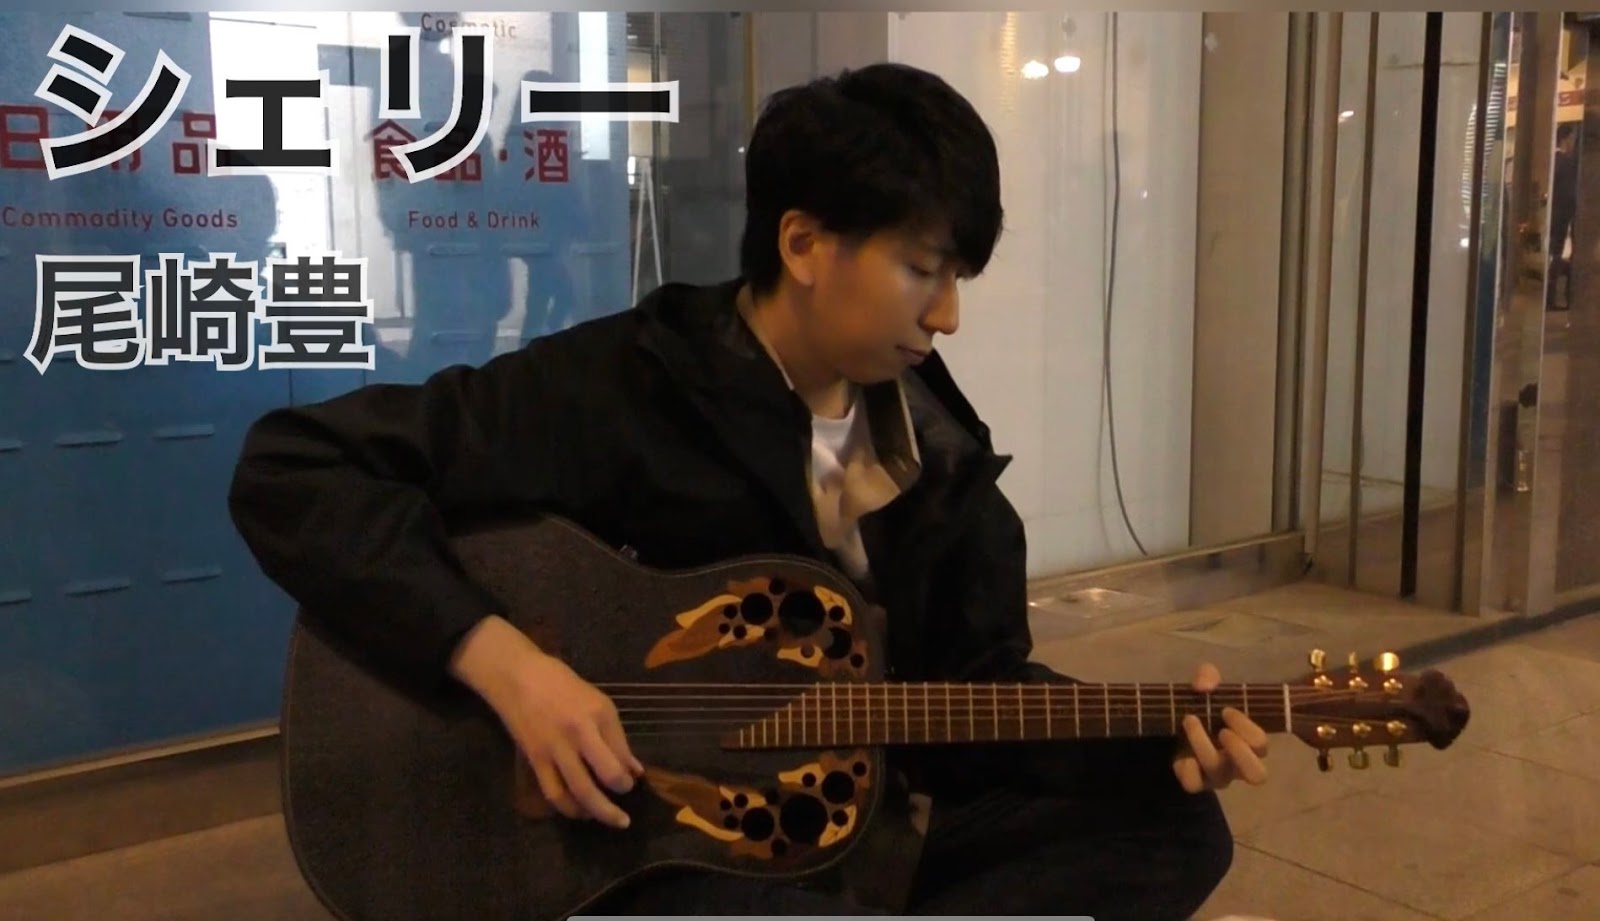 さなまるが路上に座って尾崎豊の『シェリー』をギターで弾き語りしている